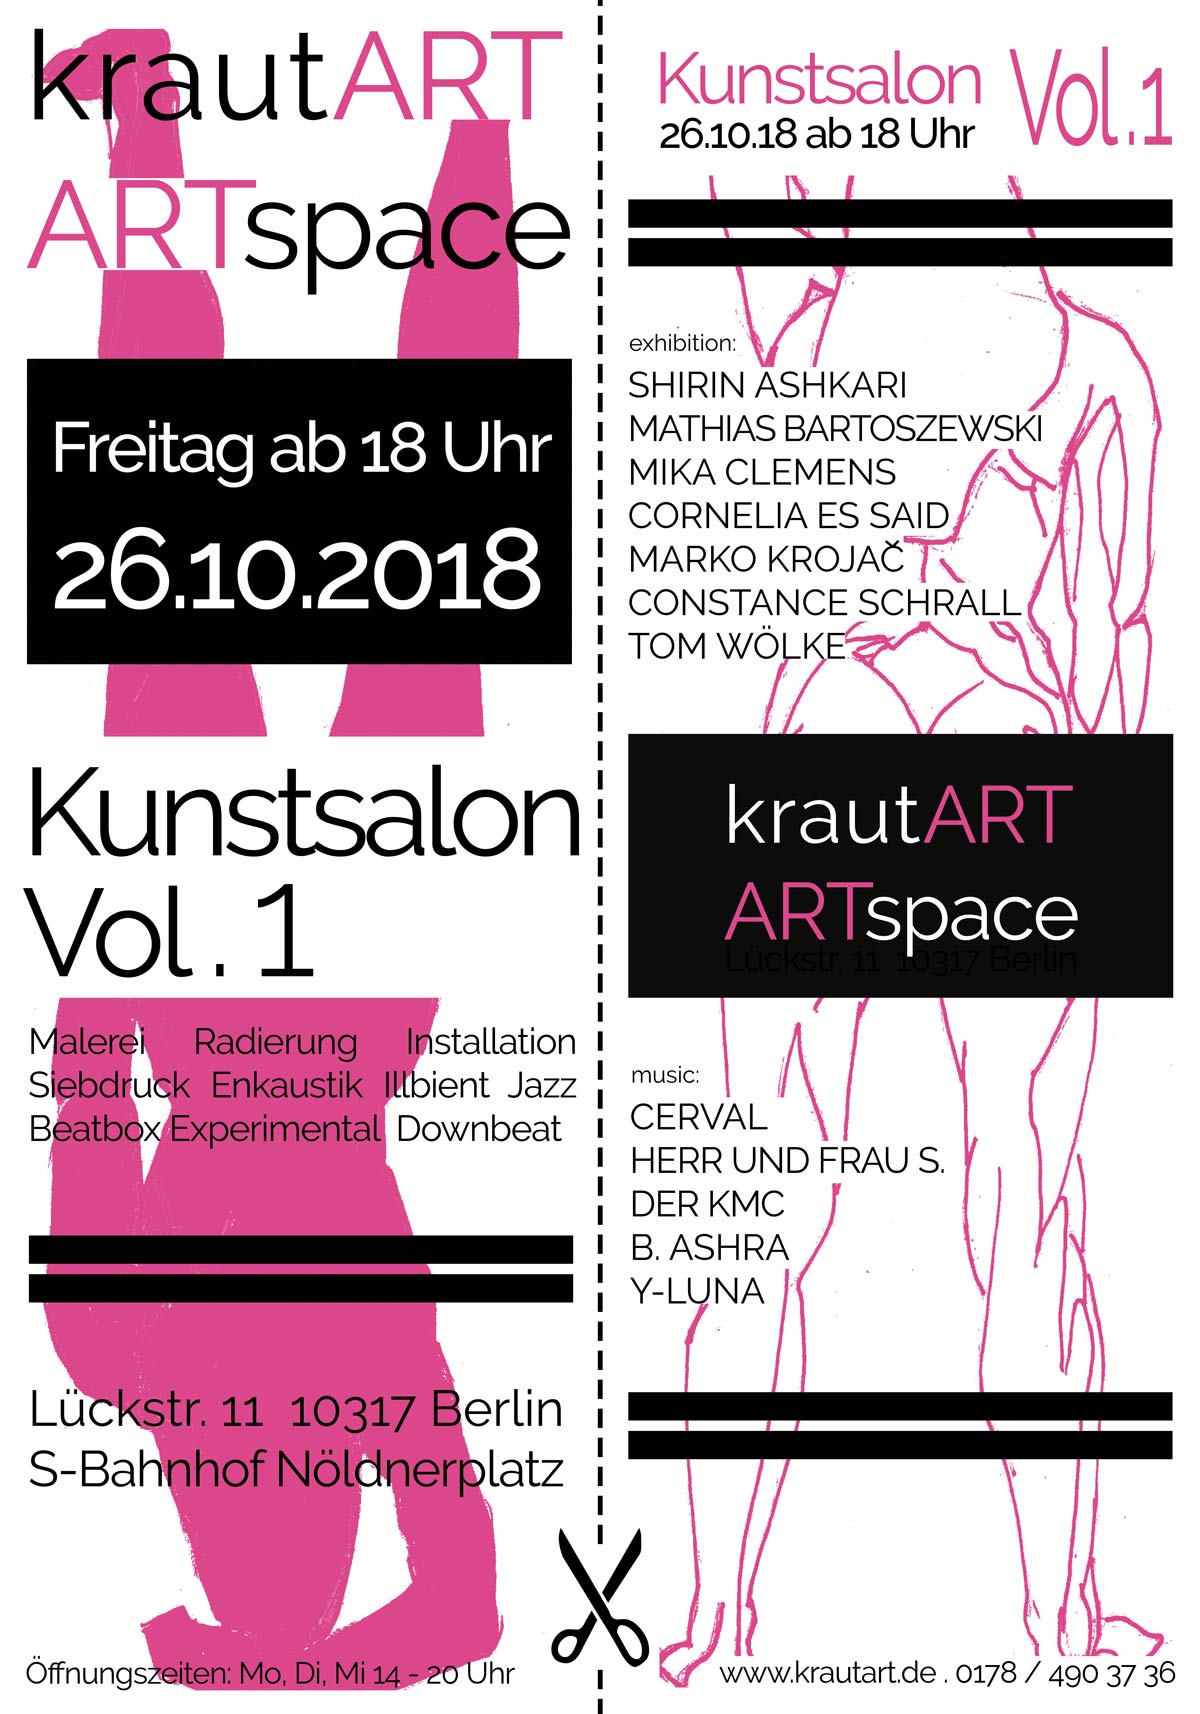 krautART präsentiert: Kunstsalon Vol. 1